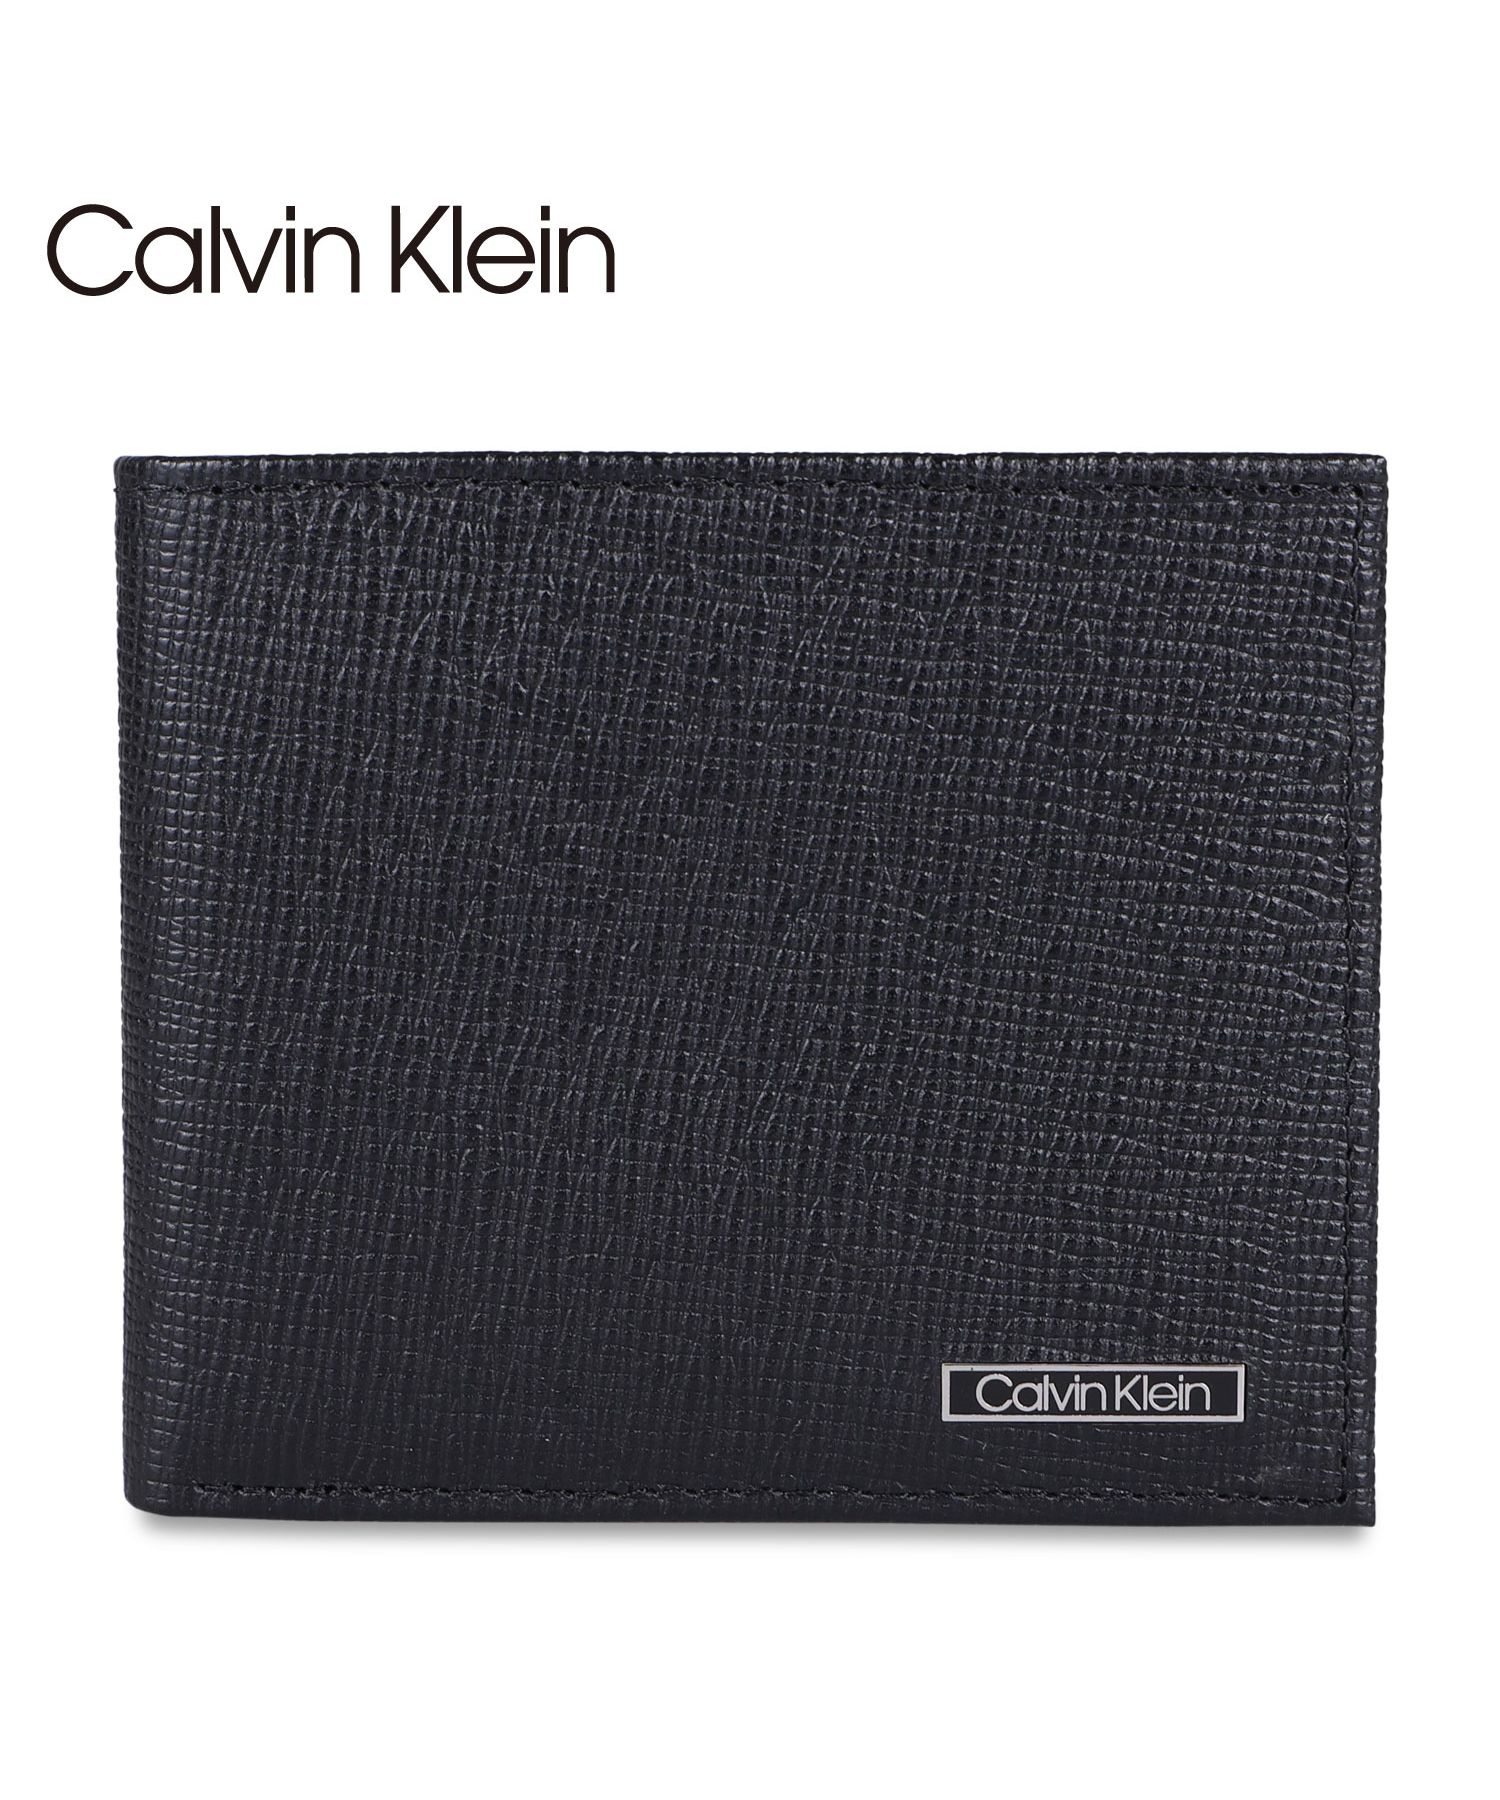 カルバンクライン Calvin Klein 財布 二つ折り財布 メンズ BILLFOLD